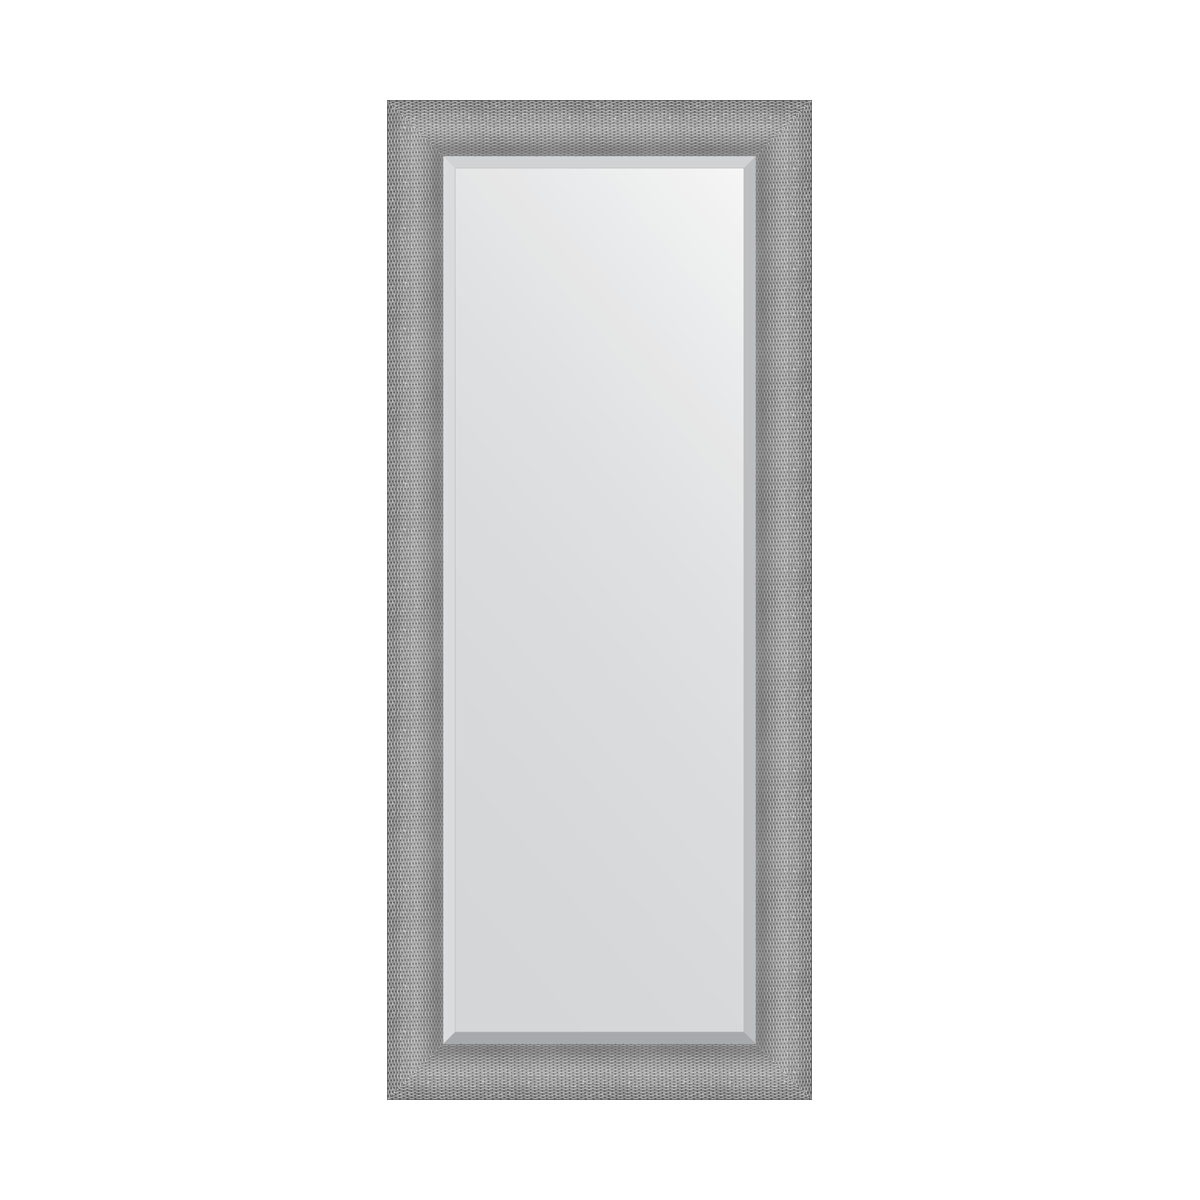 Зеркало с фацетом в багетной раме Evoform серебряная кольчуга 88 мм 67x157 см зеркало с гравировкой в багетной раме evoform серебряная кольчуга 88 мм 67x157 см